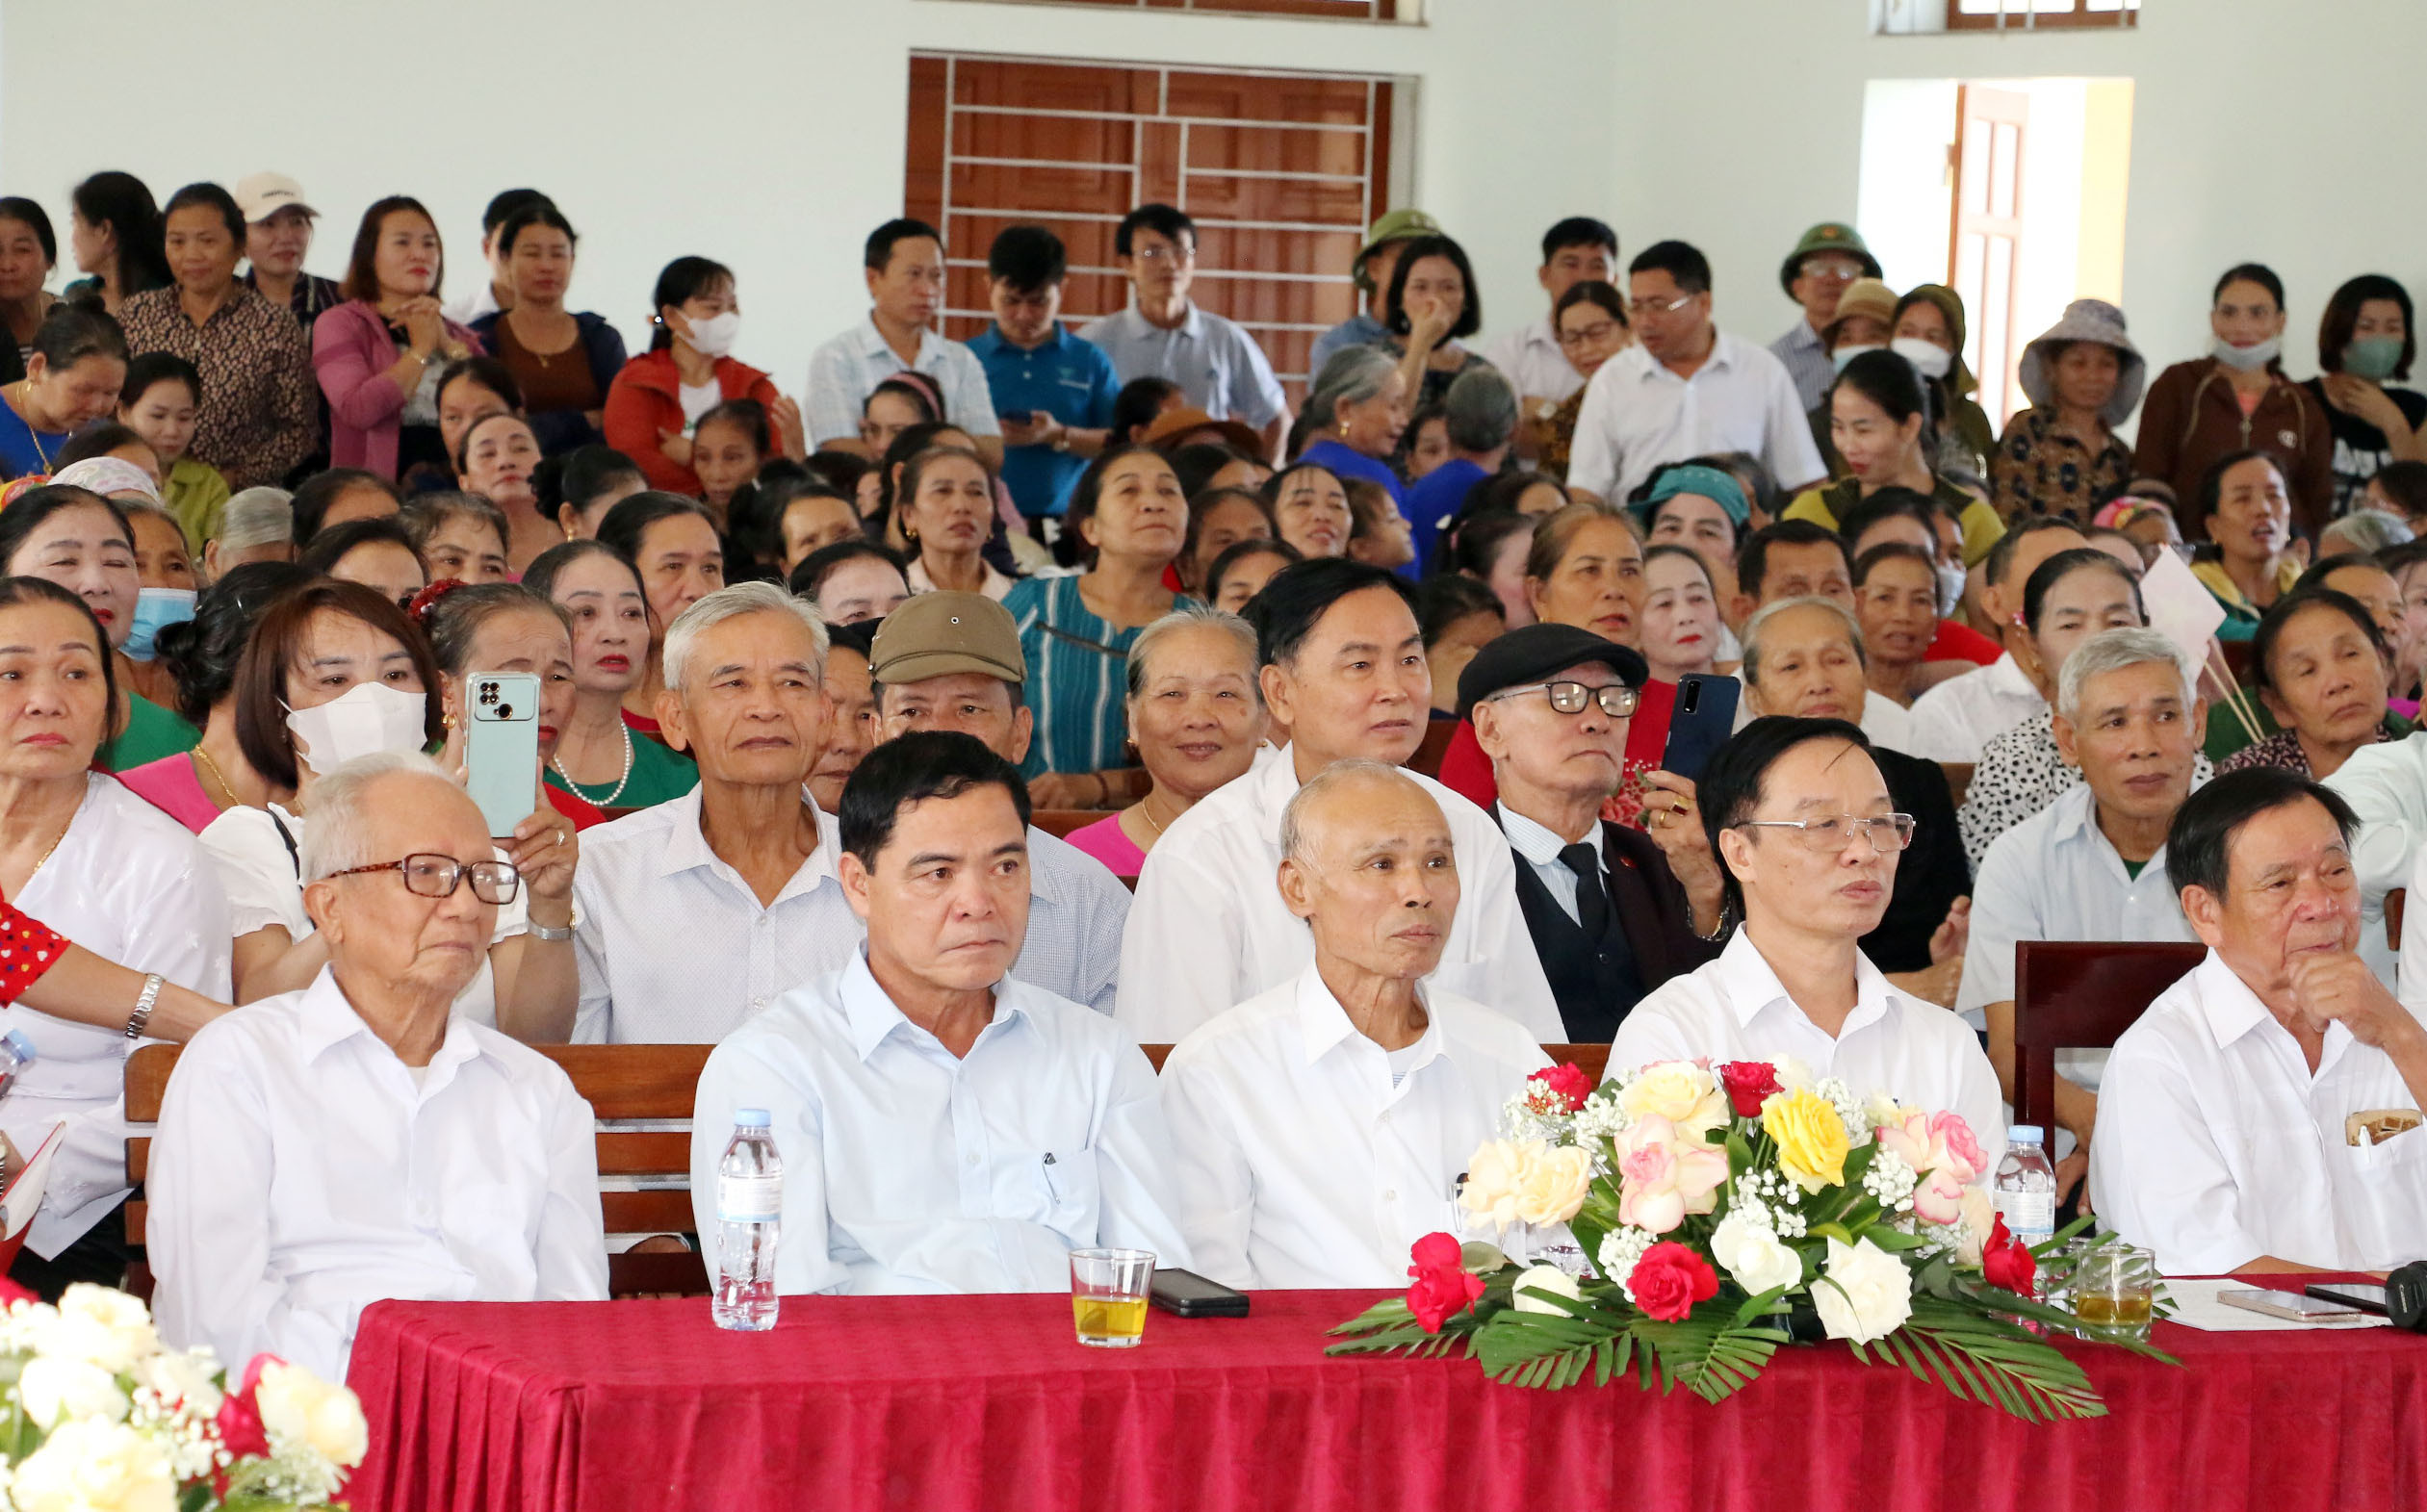 bna_Chương trình thu hút sự hưởng ứng của đông đảo người dân huyện Yên Thành. Ảnh - Mỹ Hà.jpeg